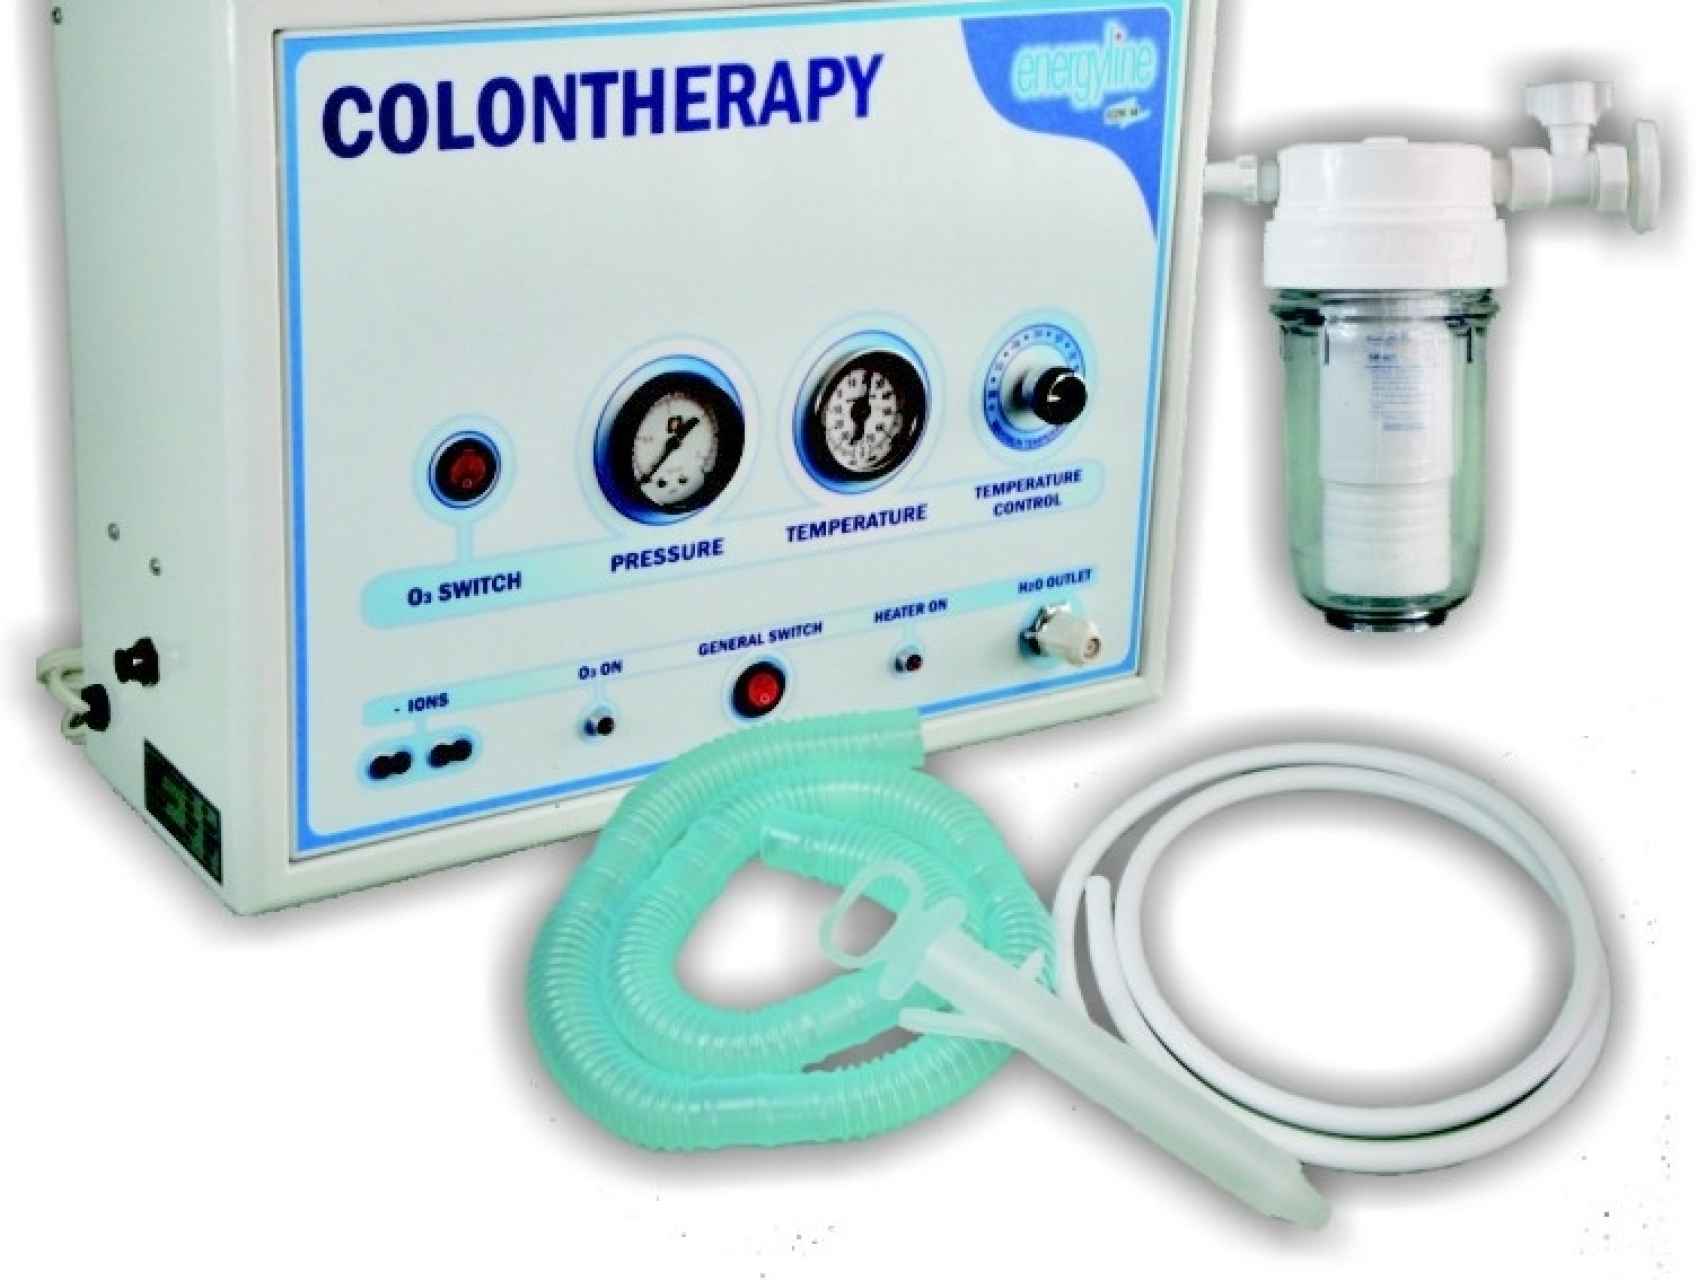 Un ejemplo del equipo utilizado por R.T. para llevar a cabo la hidroterapia de colon. Con esa manguera, introducida por el ano, se movilizan 70 litros de agua en el interior del paciente.